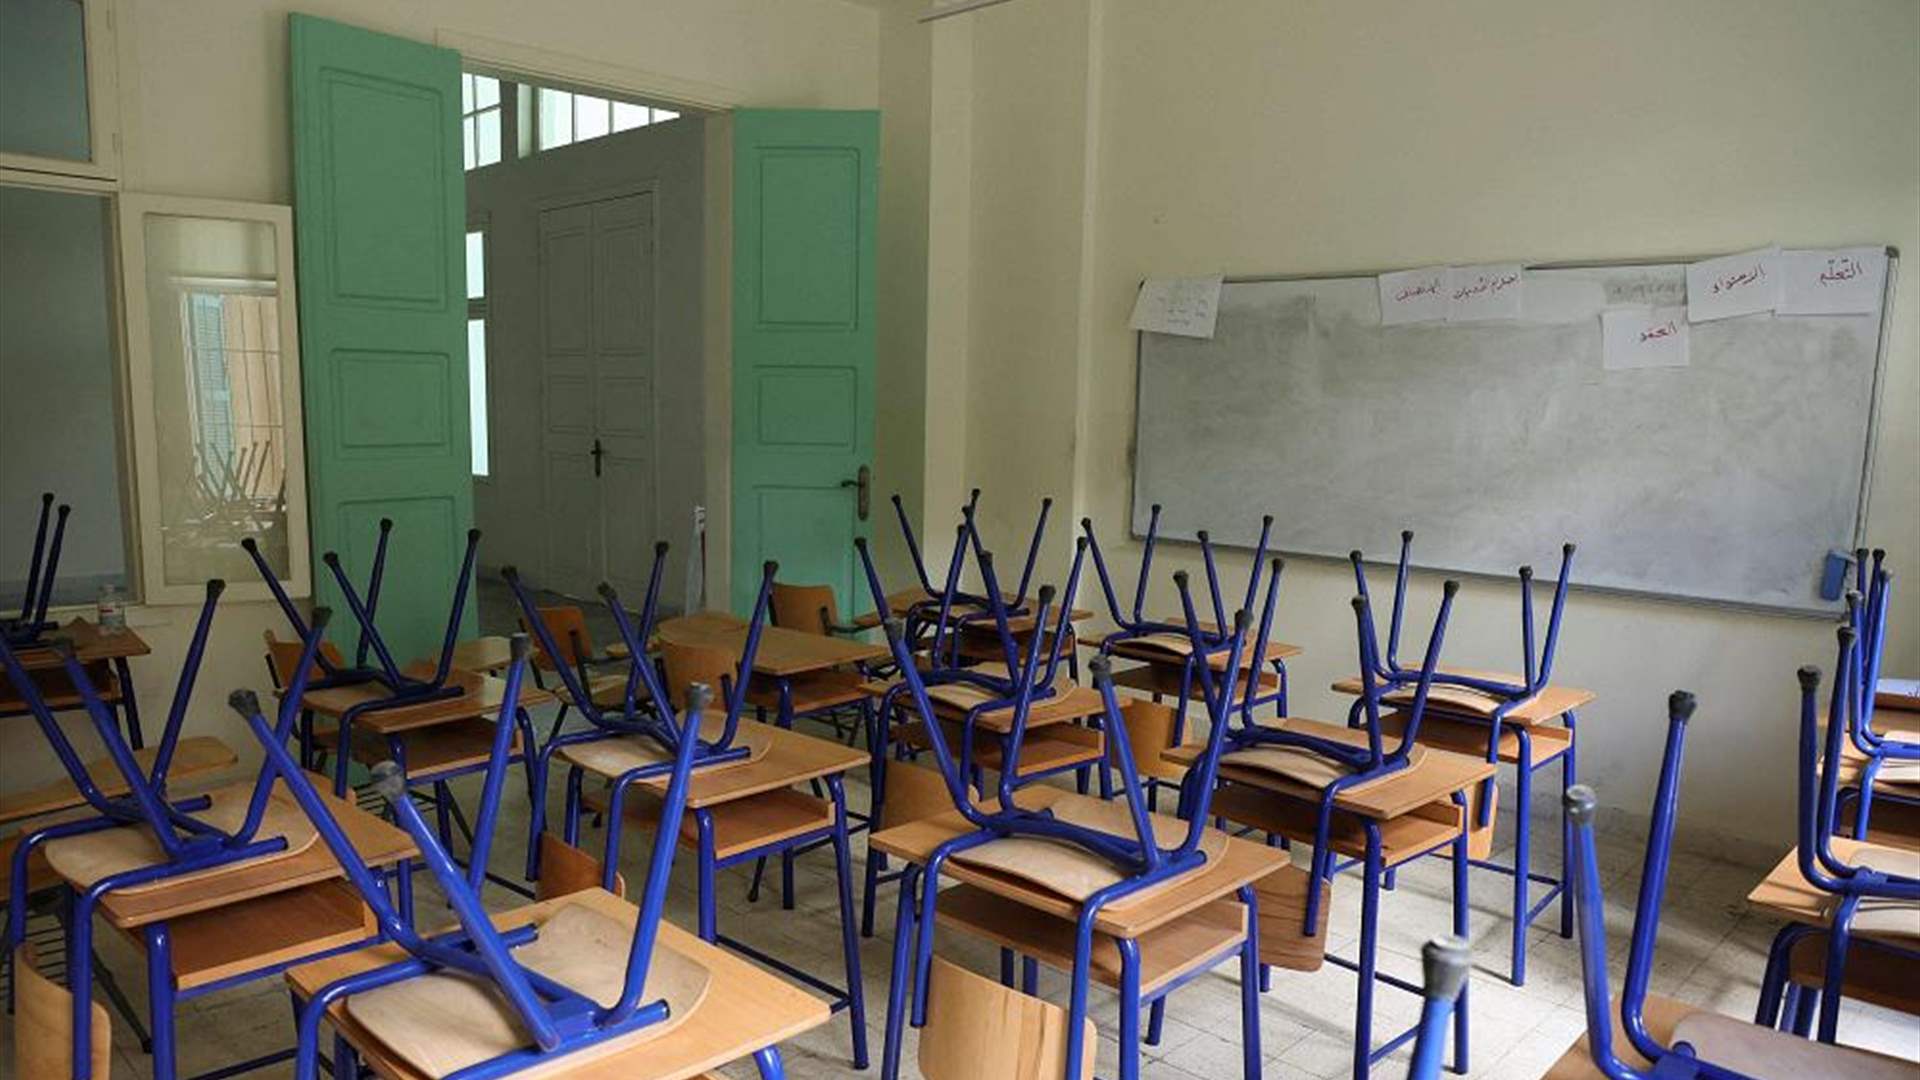 الأمانة العامة للمدارس الكاثوليكية تدعو الى اقفال المدارس يوم الجمعة 